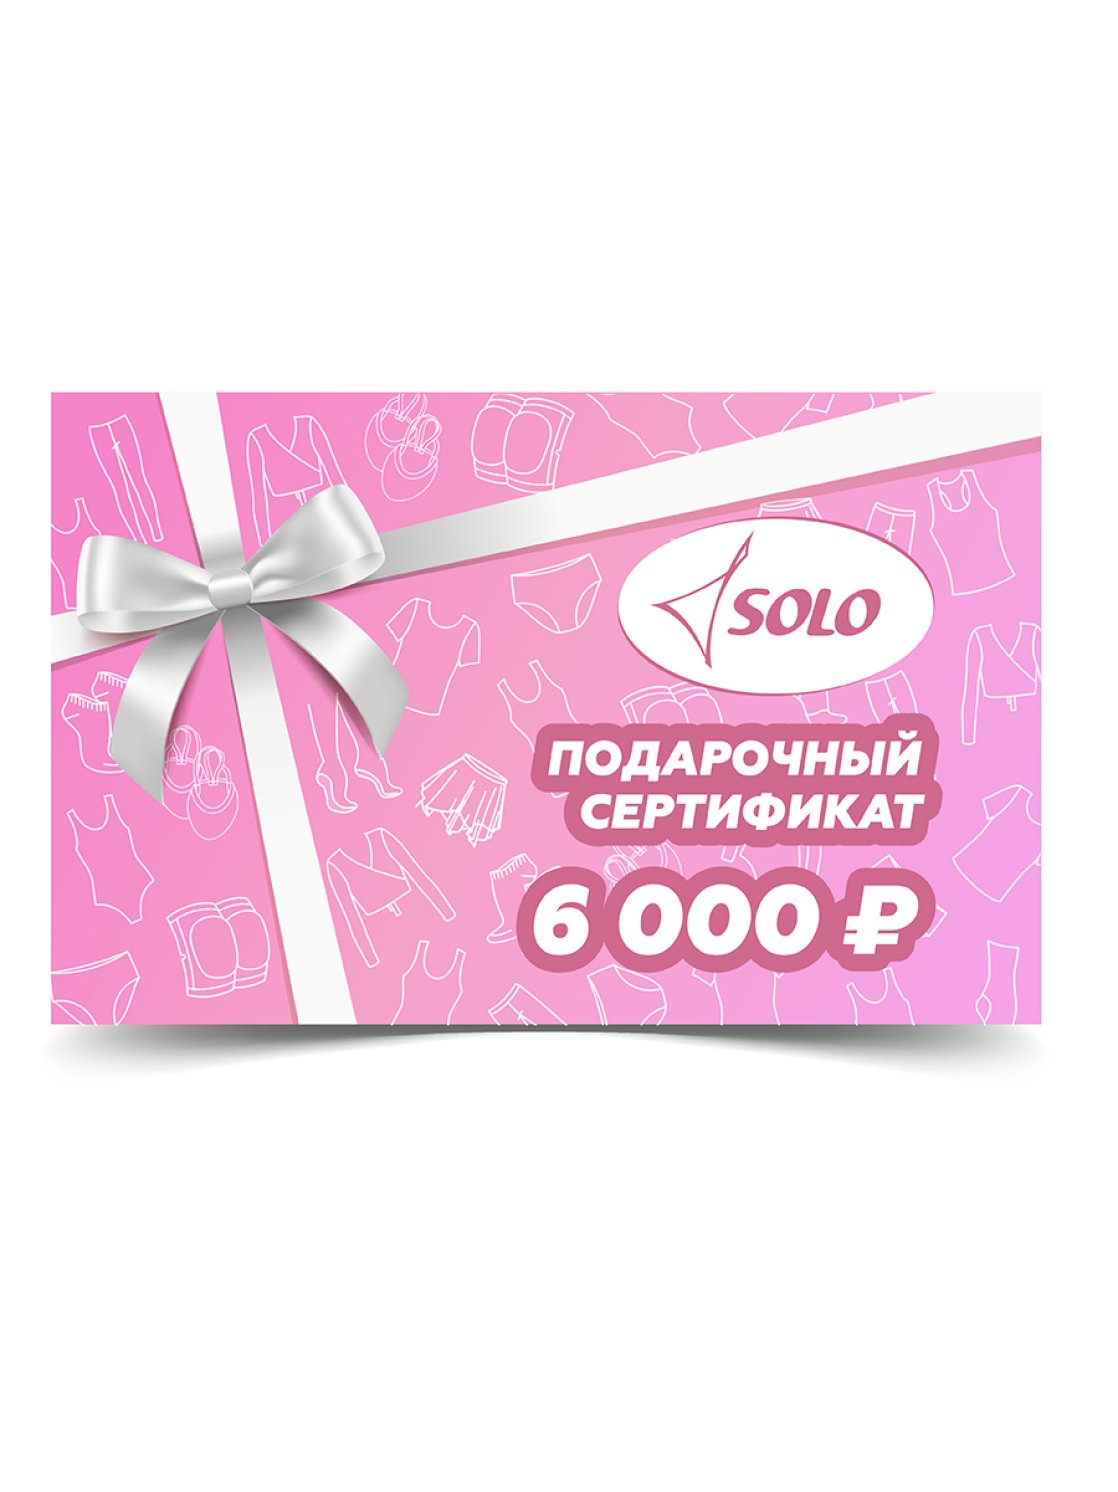 Электронный подарочный сертификат номиналом 6 000 рублей